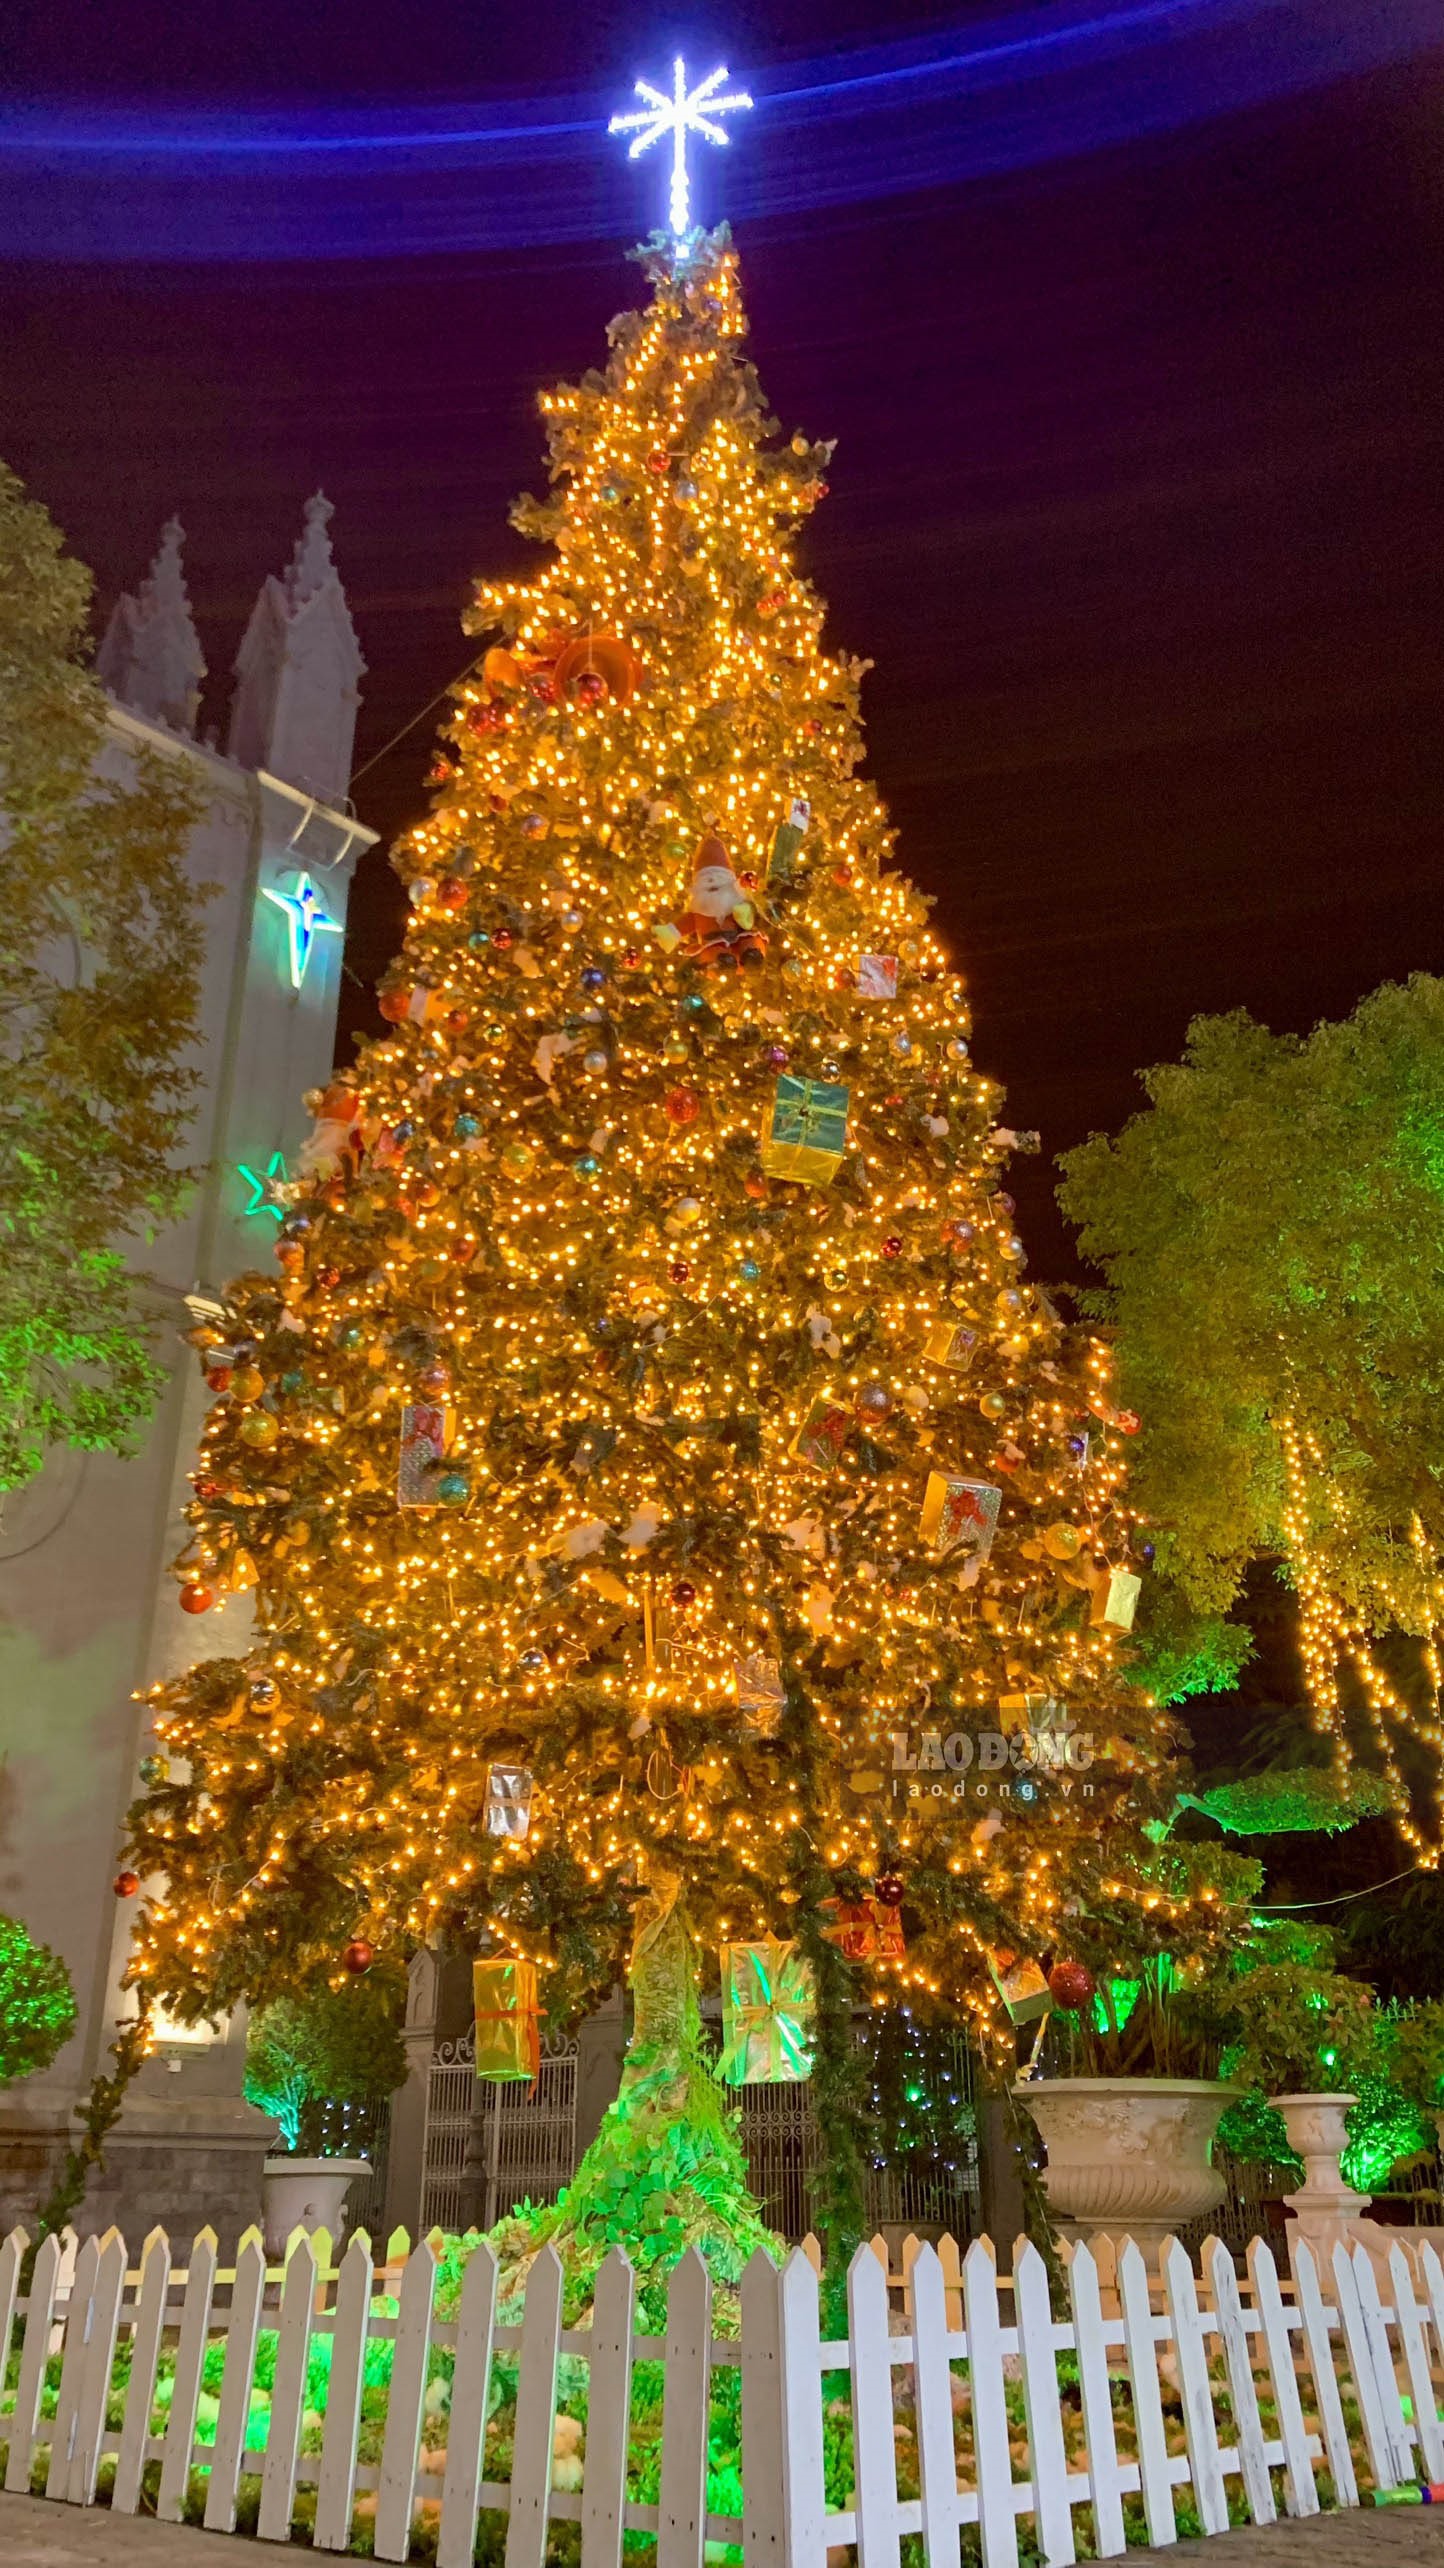 Cây thông Hải Phòng là một cảnh đẹp không thể bỏ qua trong mùa lễ hội Giáng sinh. Với hàng trăm đèn LED lung linh, cây thông Hải Phòng trở thành điểm nhấn của thành phố. Hãy cùng xem những hình ảnh về cây thông Hải Phòng để đắm mình trong không khí lễ hội tràn ngập sắc màu.